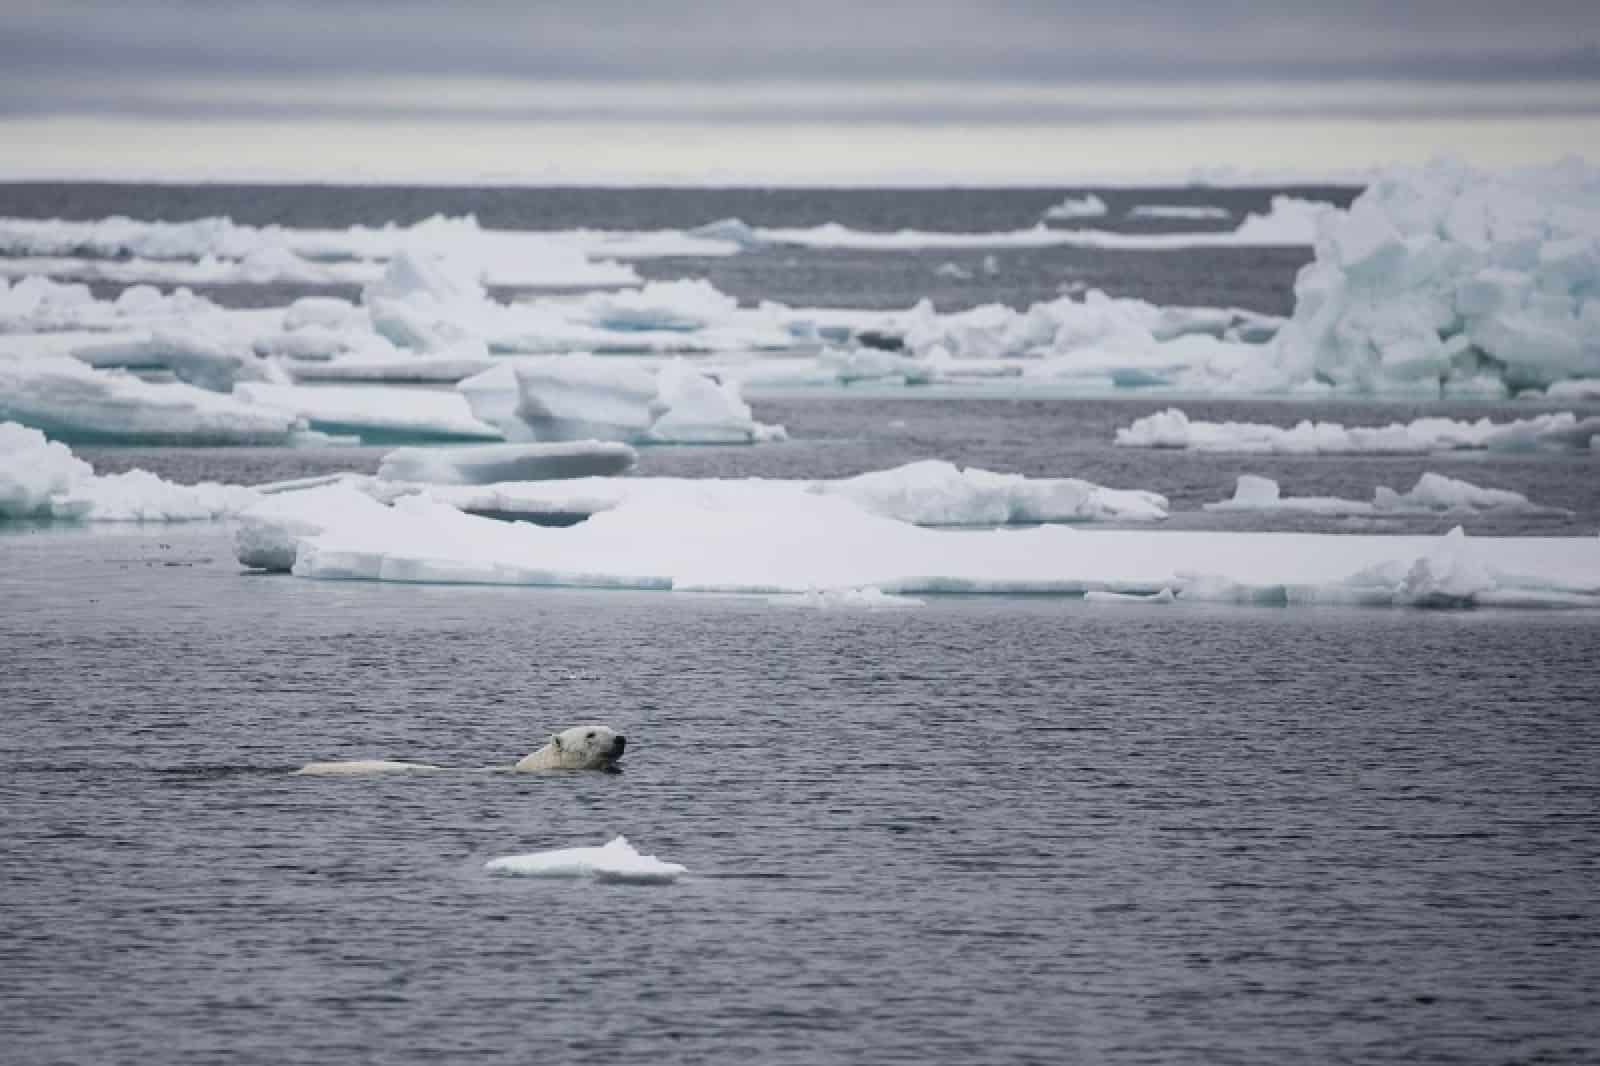 Schwimmender Eisbär, © by Sindre kinneröd / WWF-Canon